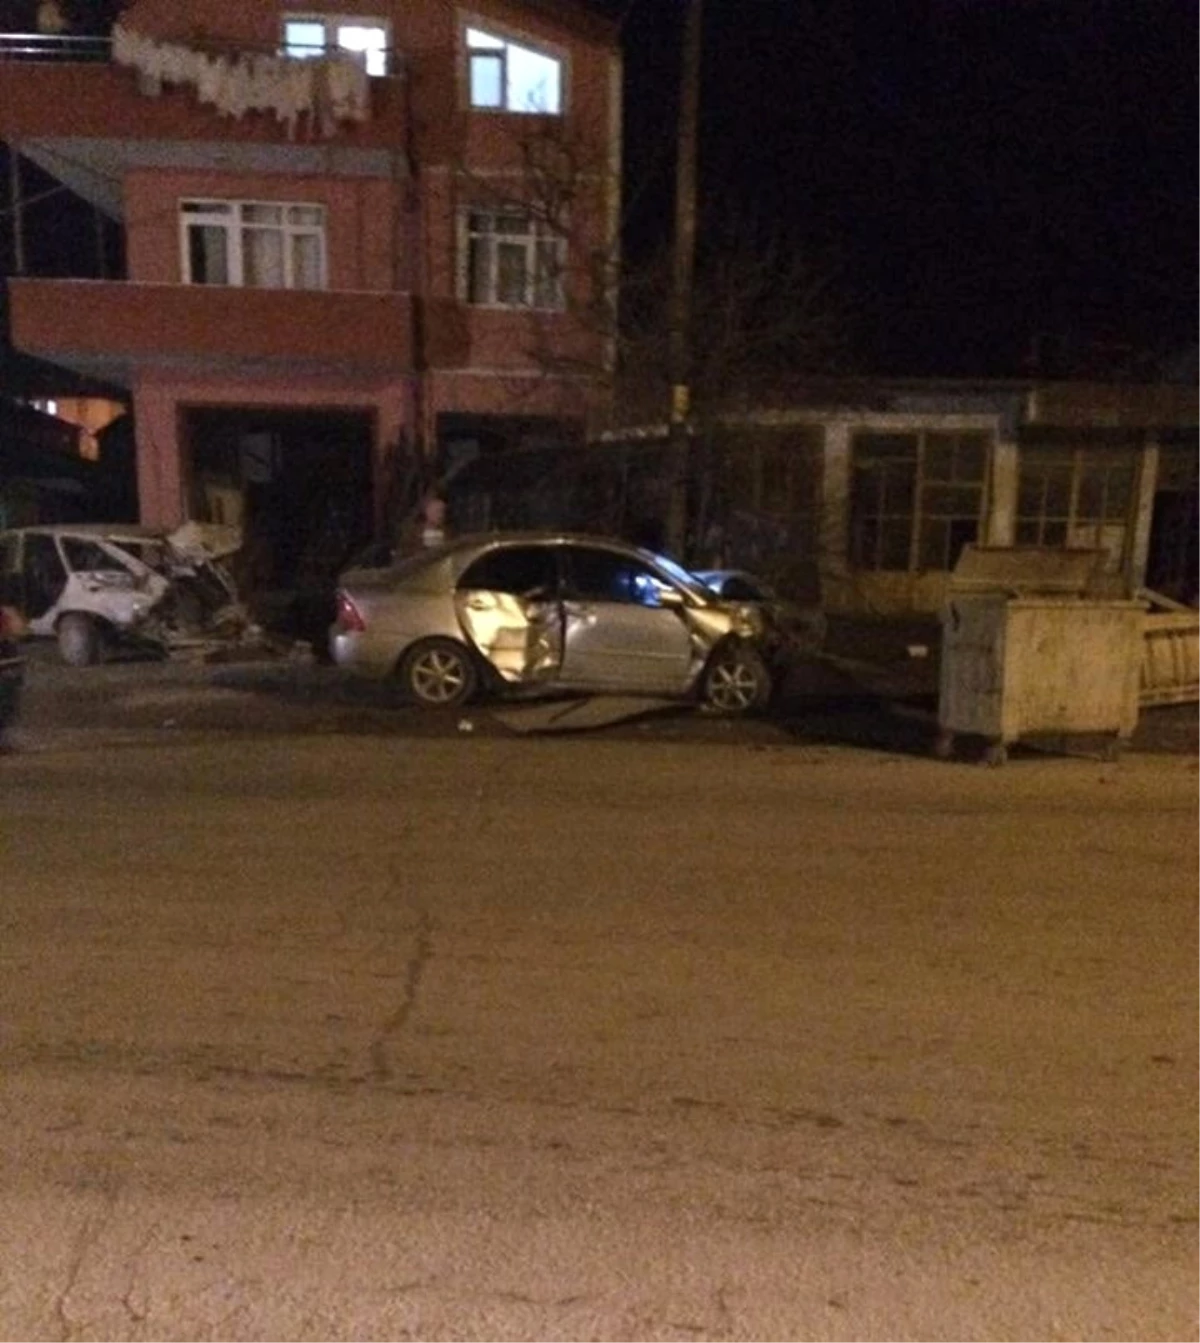 Sakarya\'da Trafik Kazası: 2 Yaralı